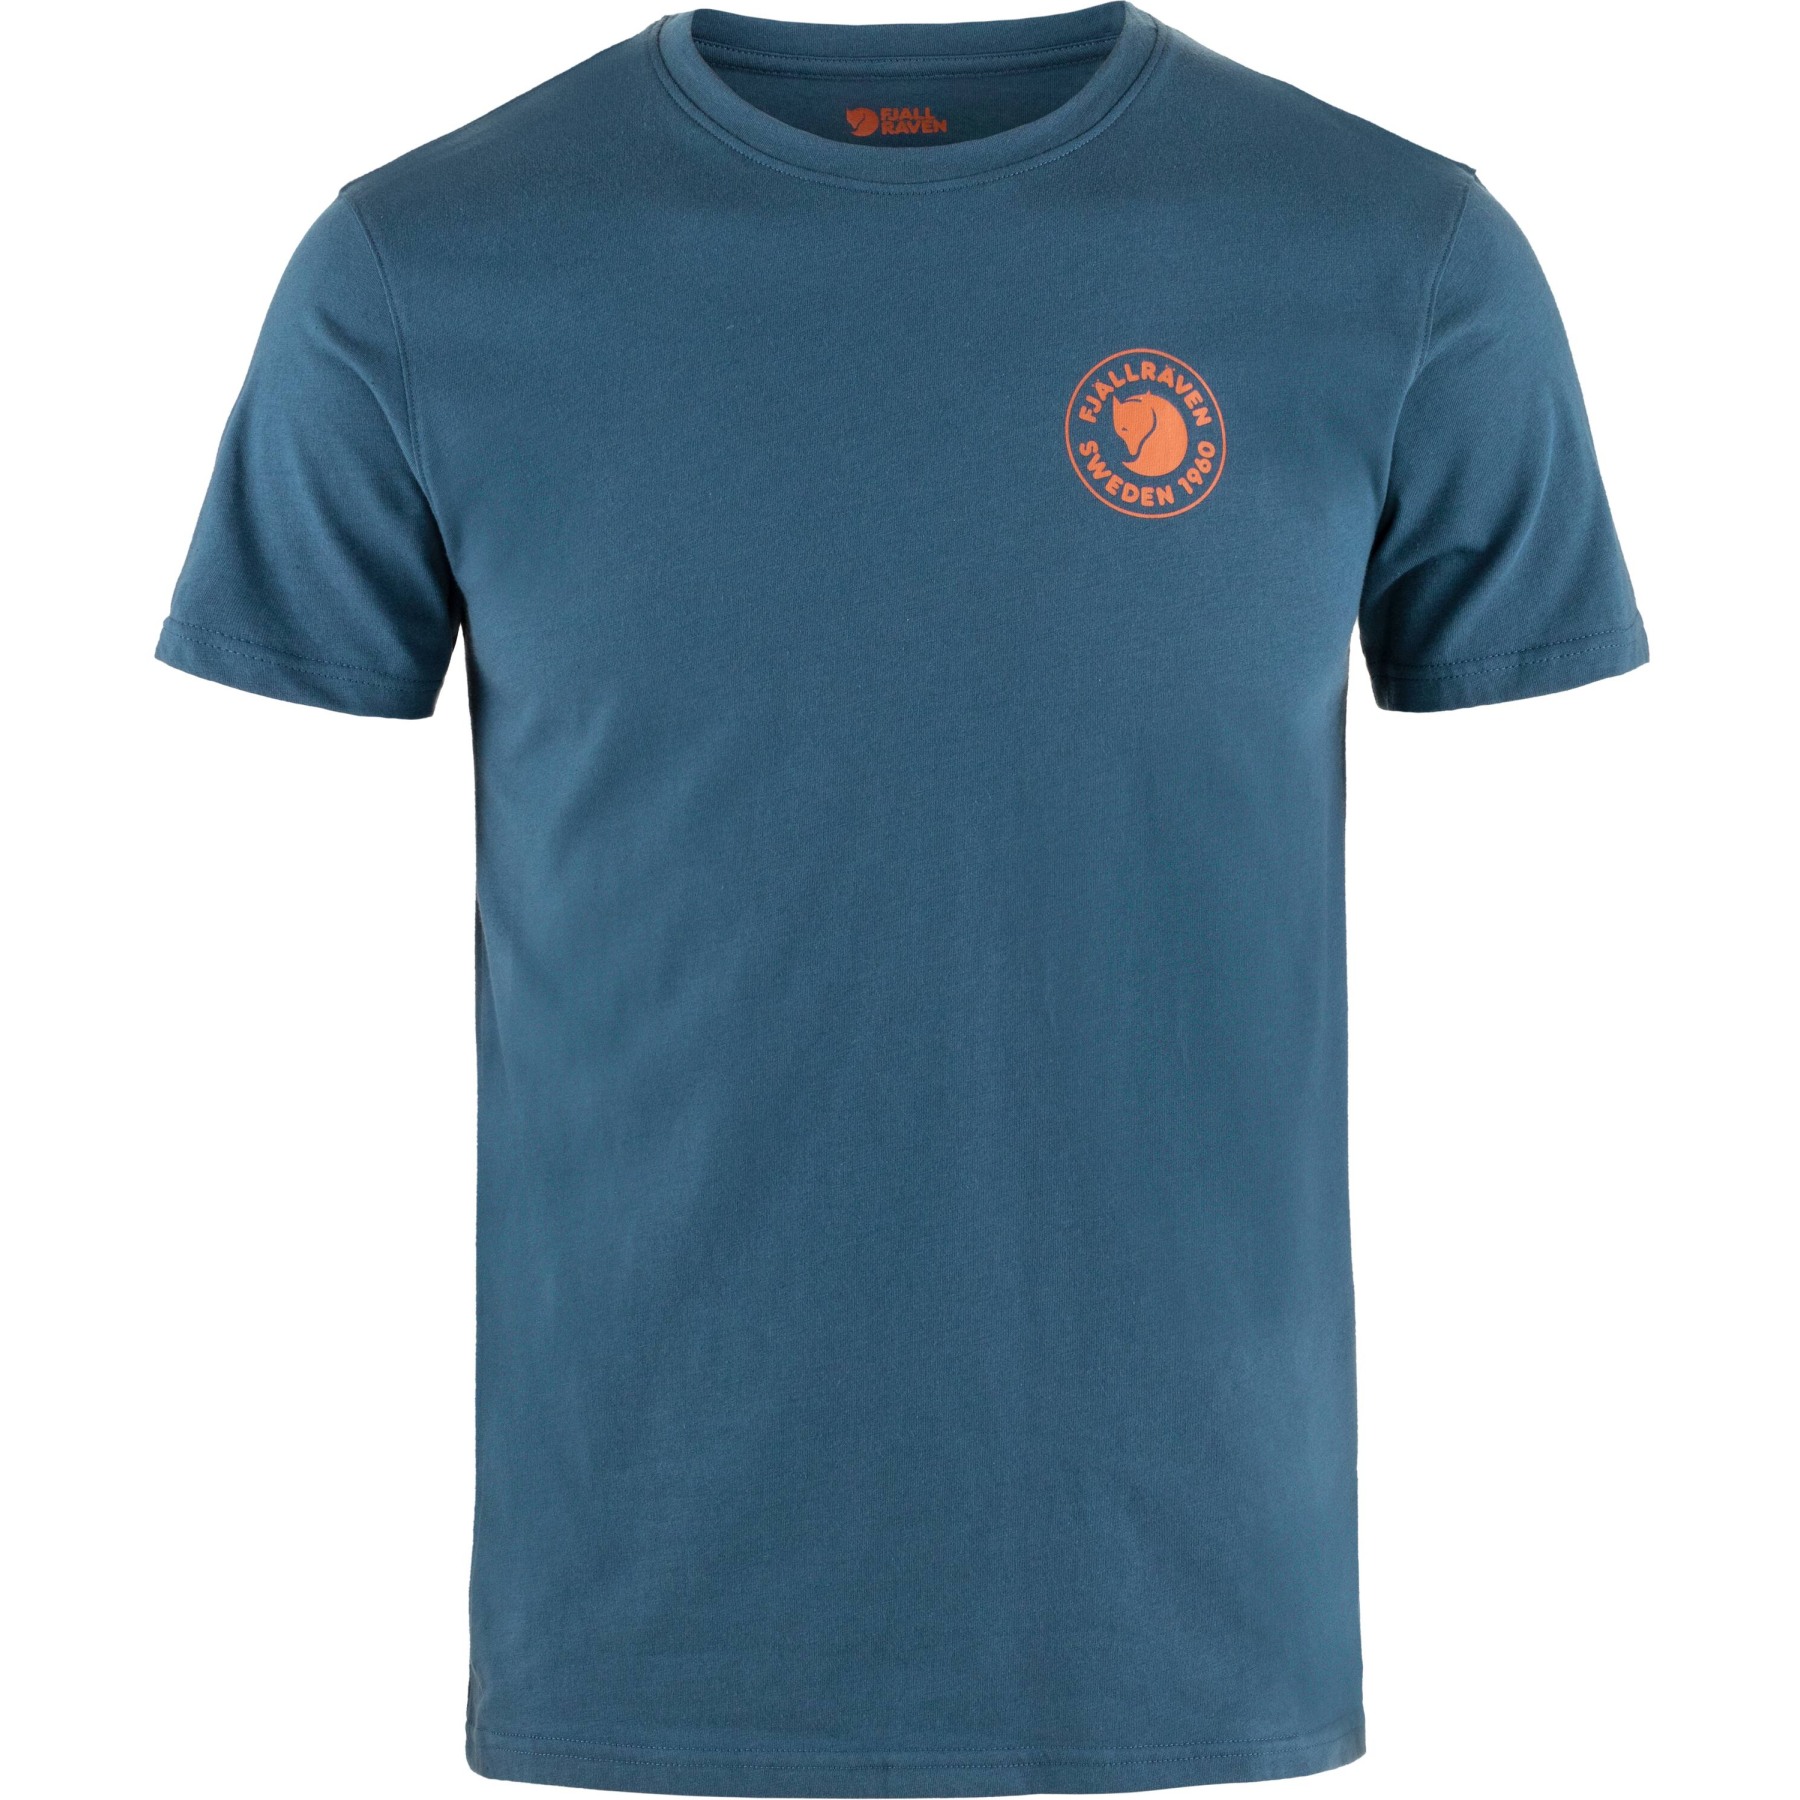 Produktbild von Fjällräven 1960 Logo T-Shirt Herren - indigo blue